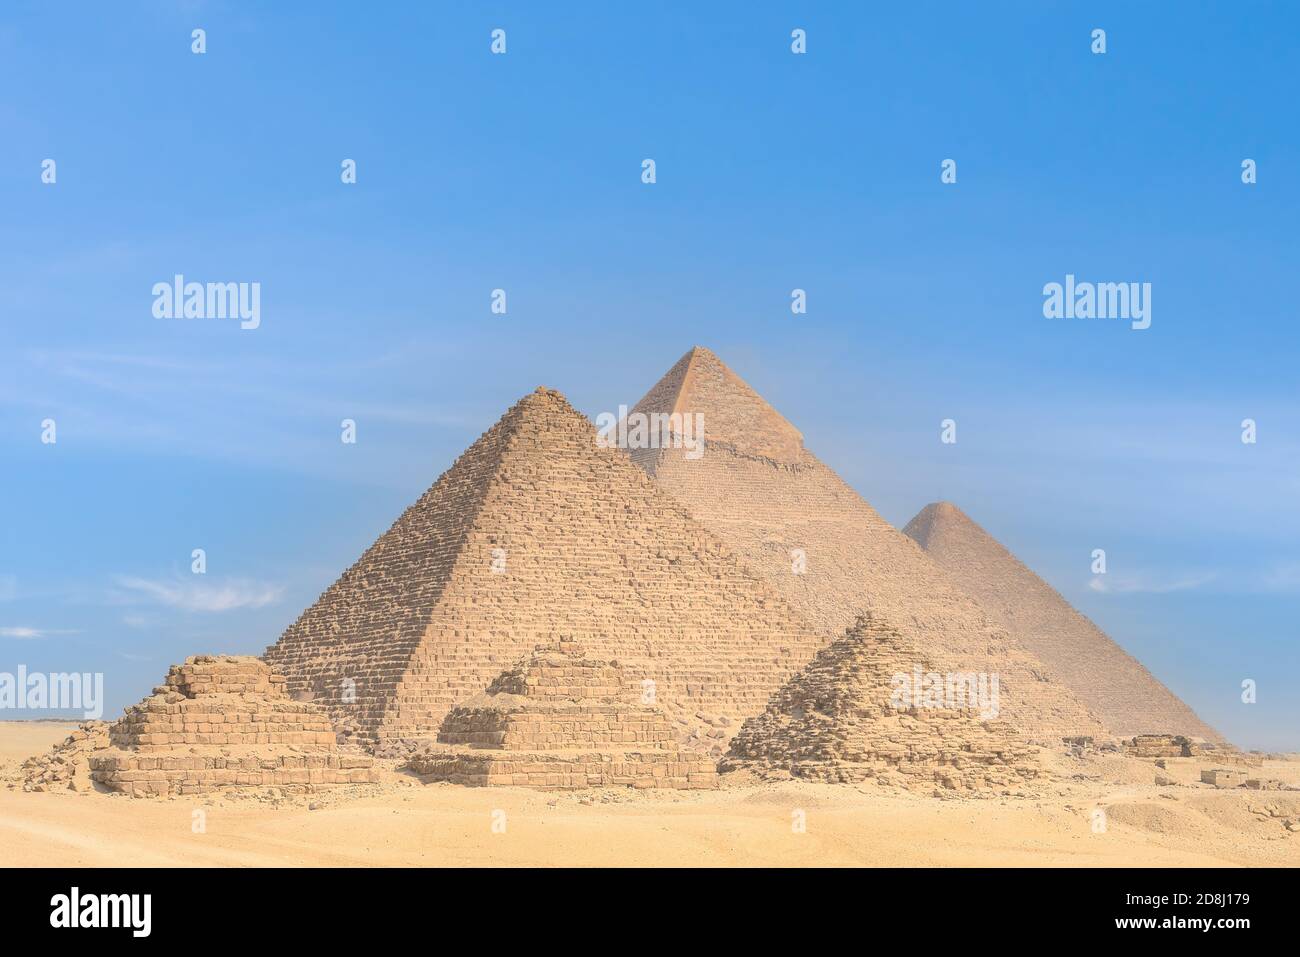 Les pyramides de Khafre et de Khufu, nécropole de Gizeh (liste du patrimoine mondial de l'UNESCO, 1979), Égypte. Civilisation égyptienne, ancien Royaume, dynastie IV Banque D'Images